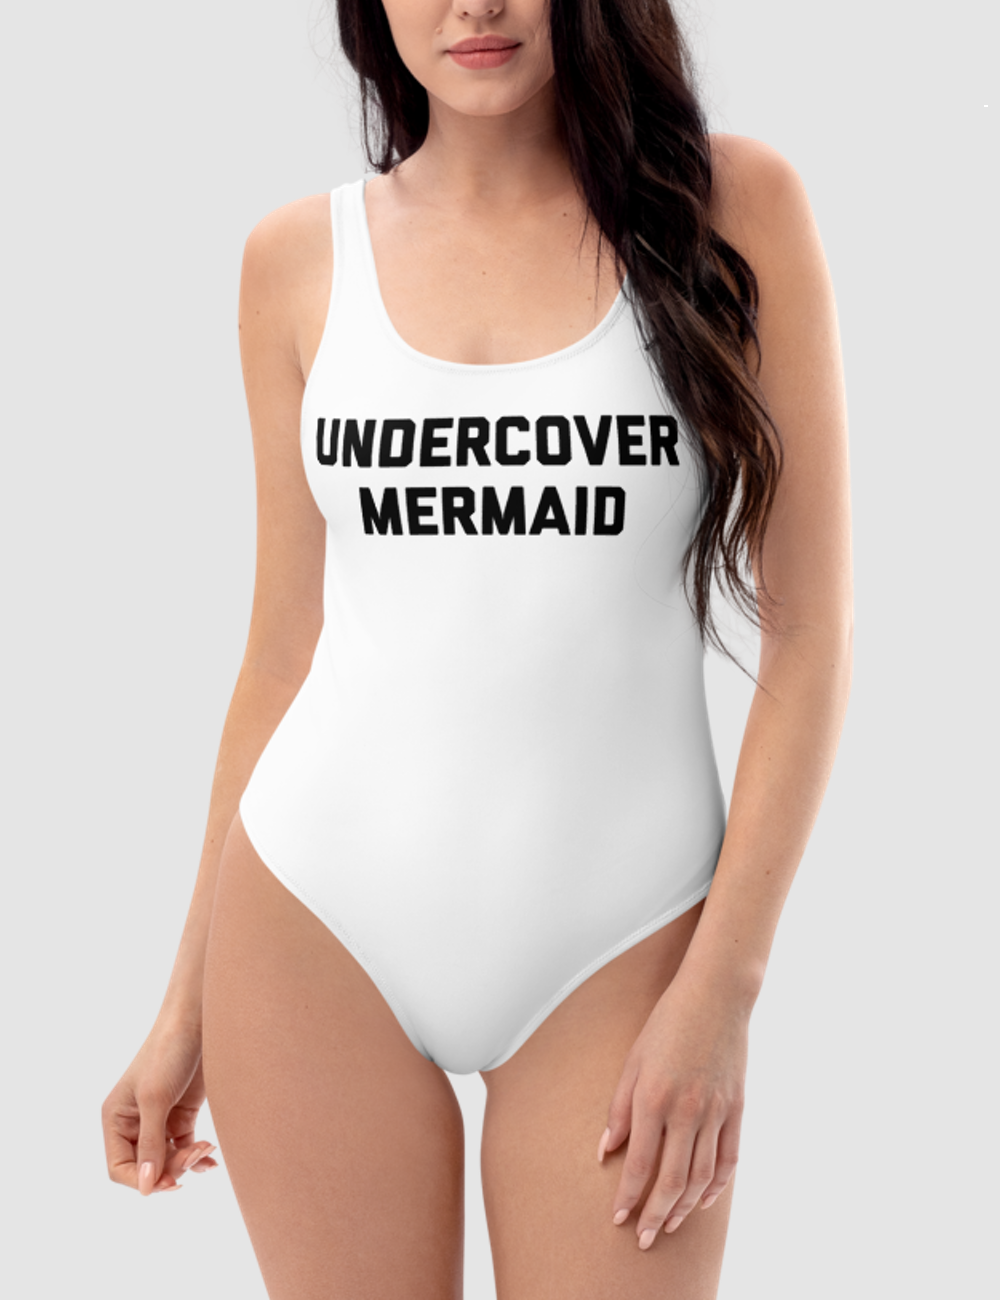 Undercover Mermaid | Women's One-Piece Swimsuit OniTakai